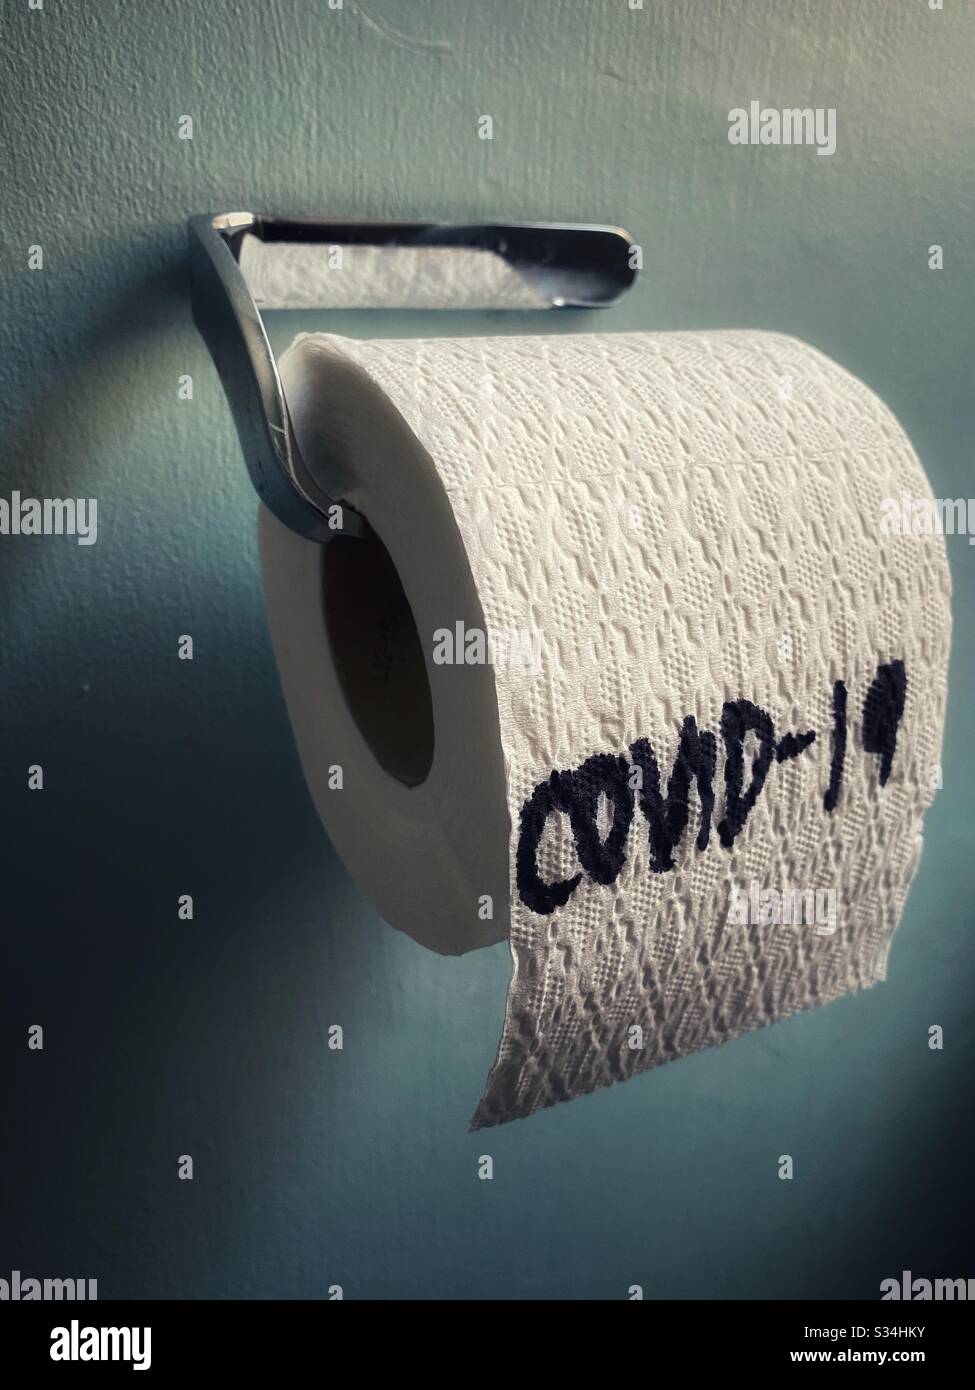 COVIS-19 in einer Rolle Toilettenpapier geschrieben Stockfoto